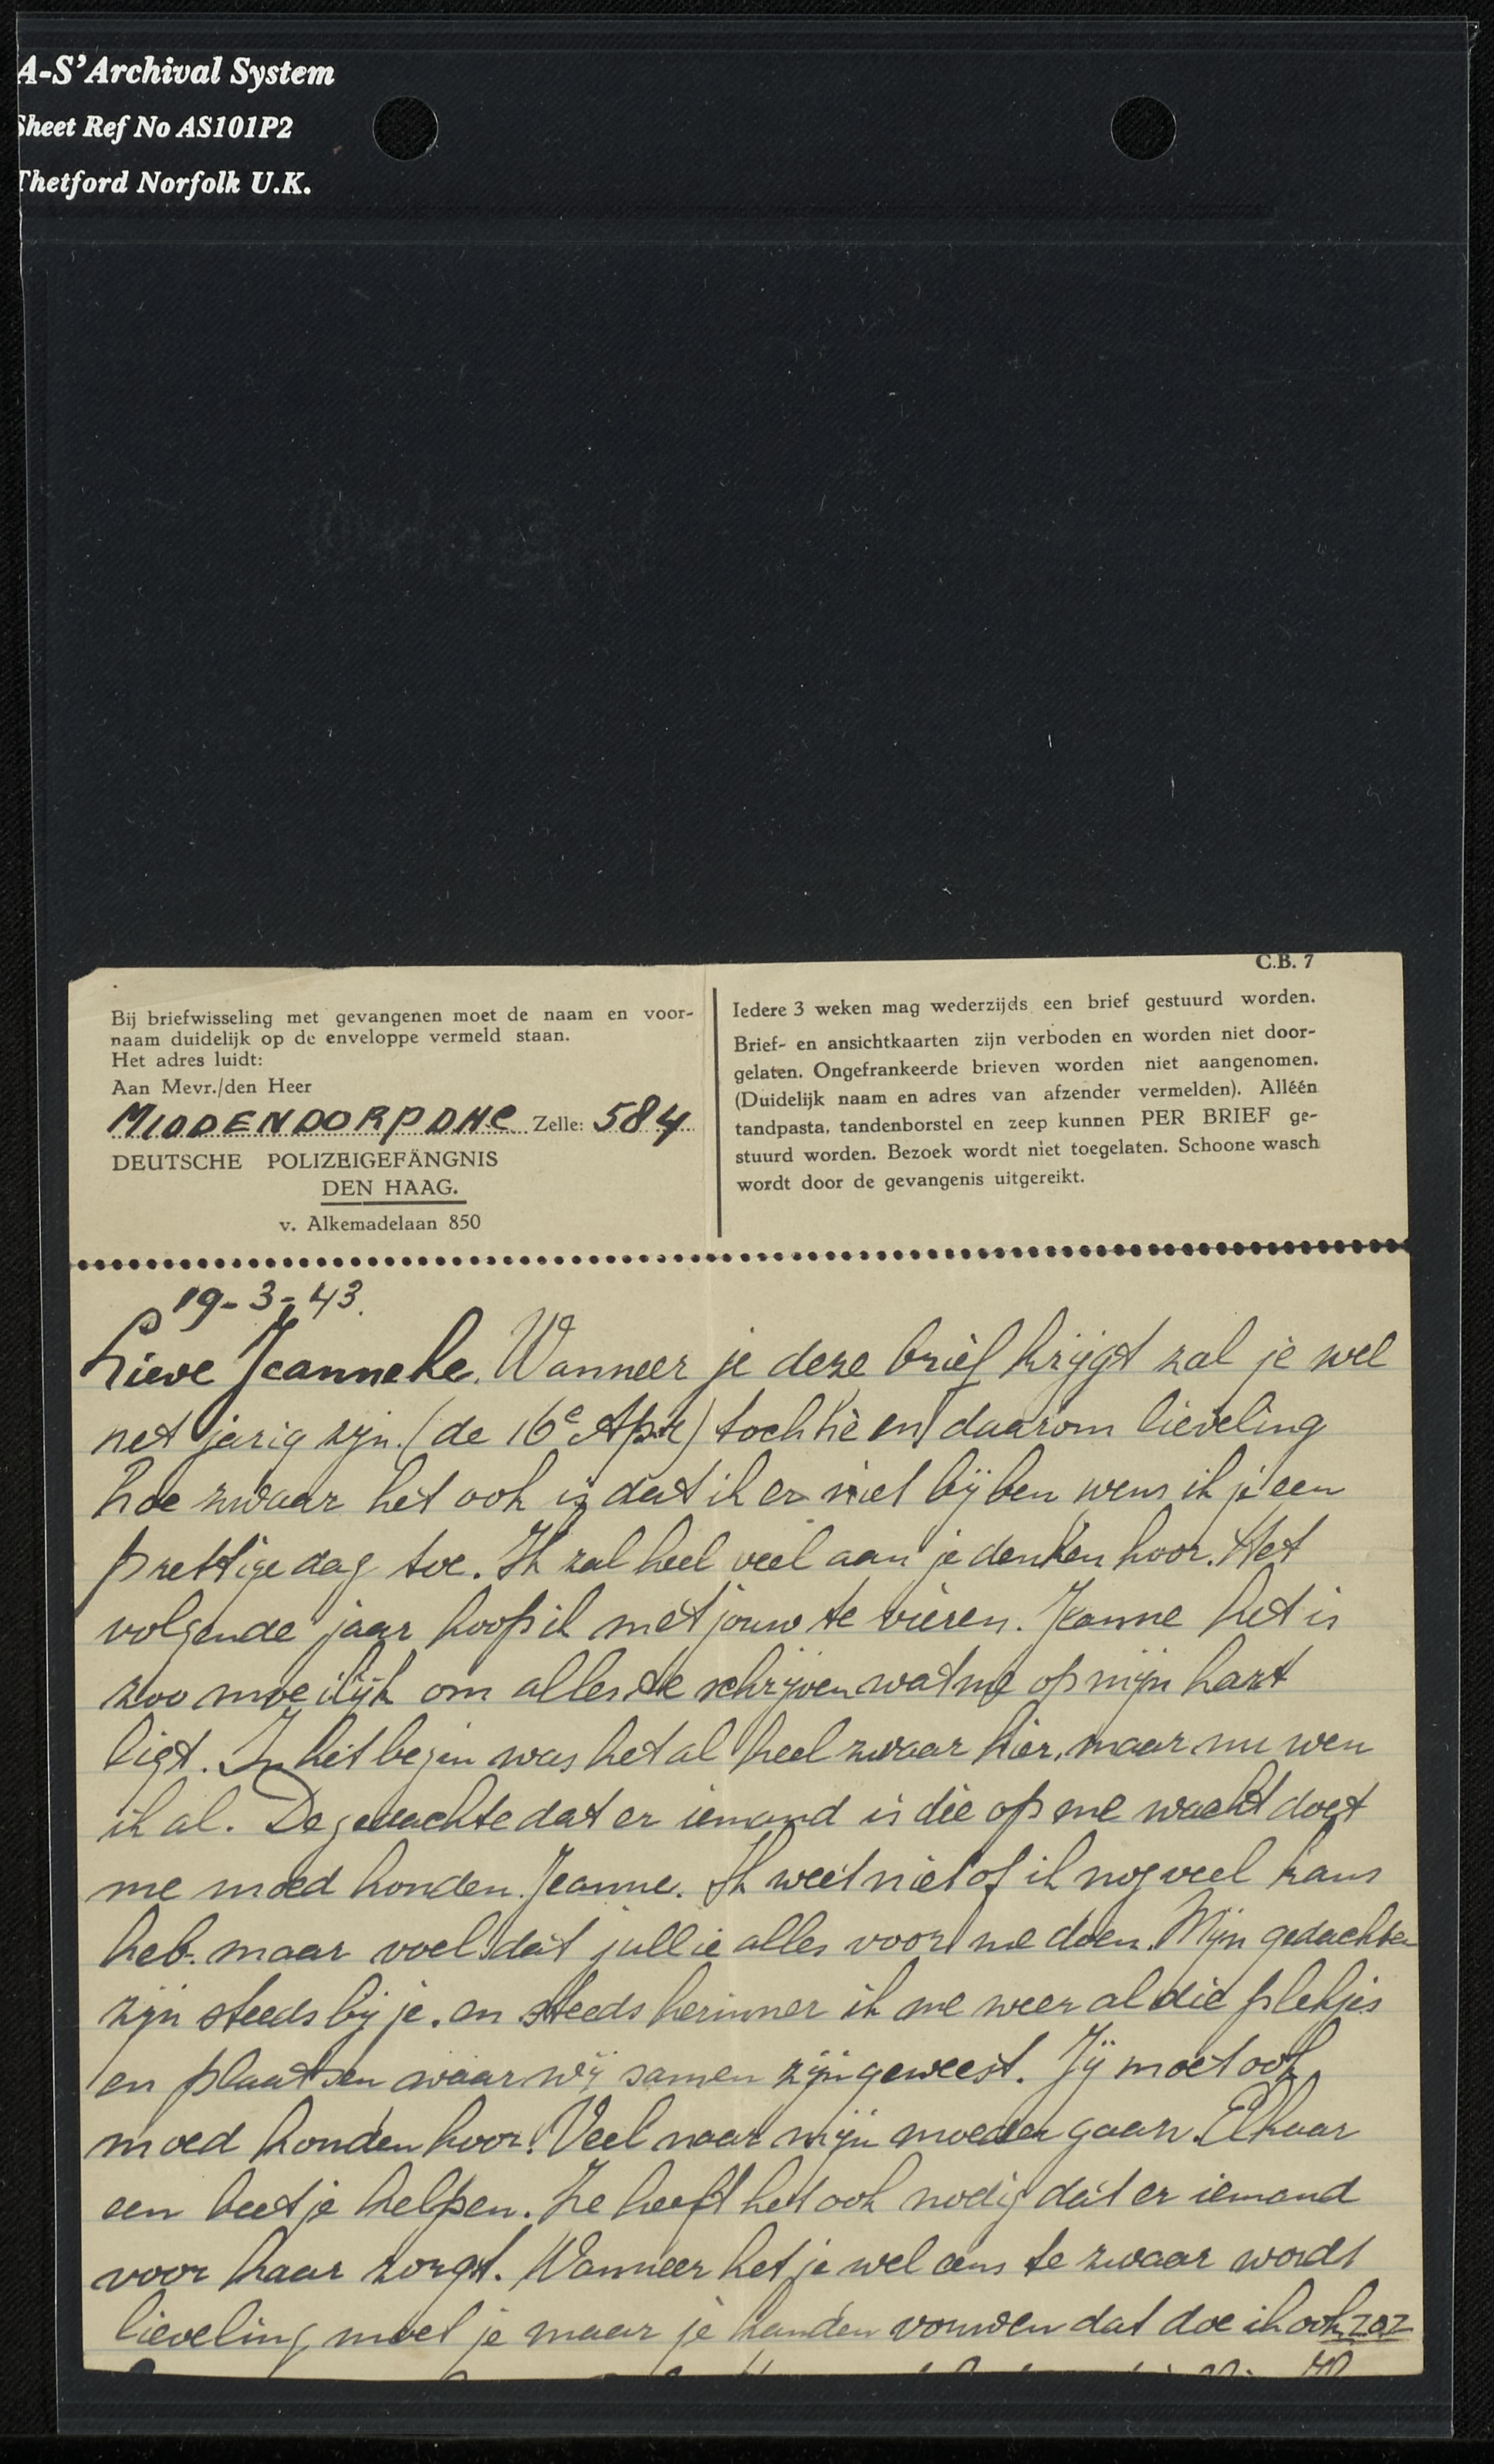 Brief van Henny Middendorp aan Jeanneke vanuit het Oranjehotel, 9 april 1943.